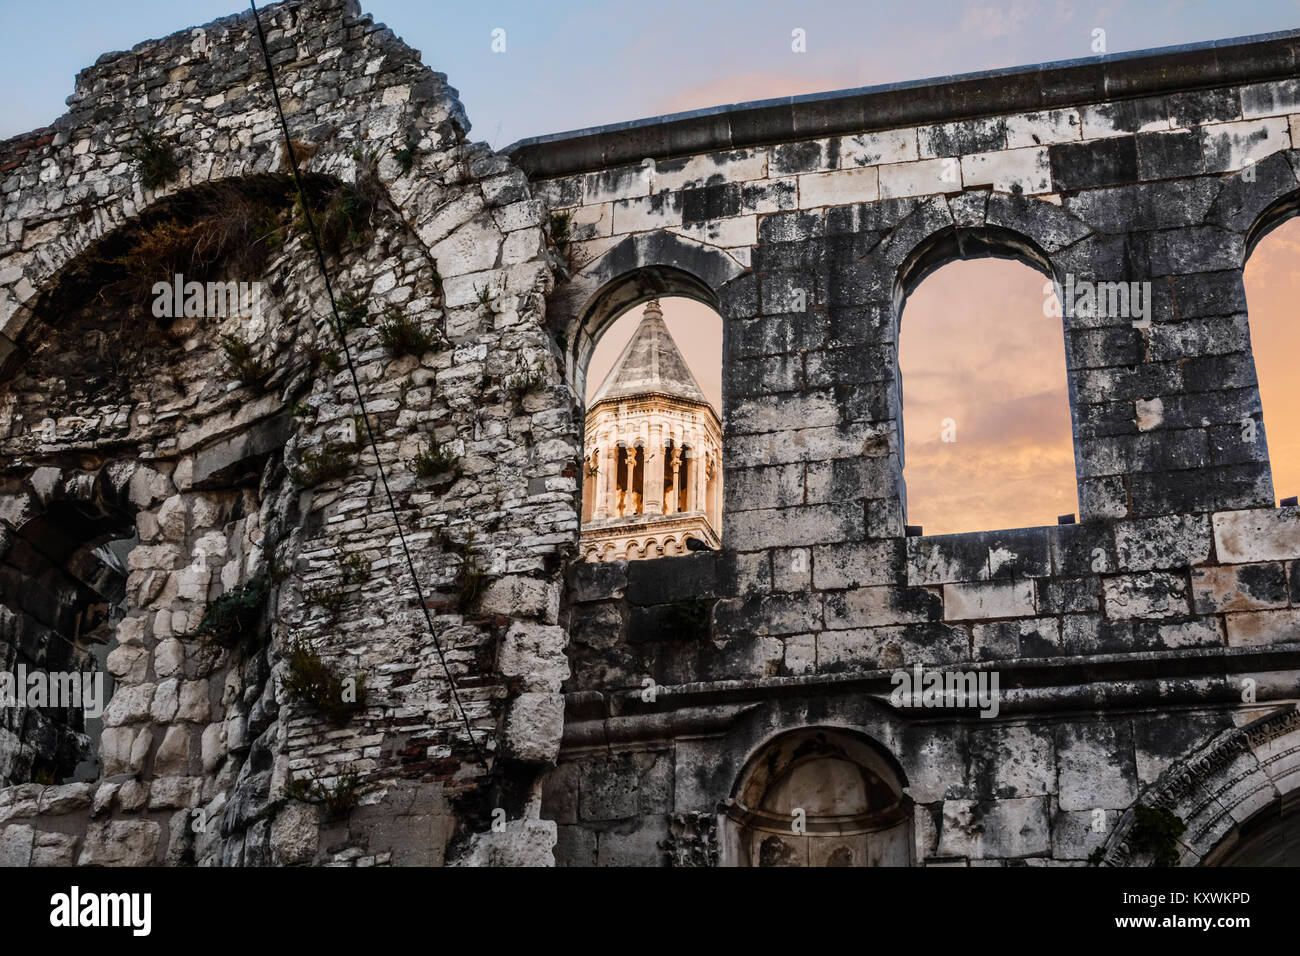 Silver Gate au Palais de l'empereur Dioclétien à Split Croatie au coucher du soleil et de la lumière frappe la tour de cathédrale saint Domnius Banque D'Images